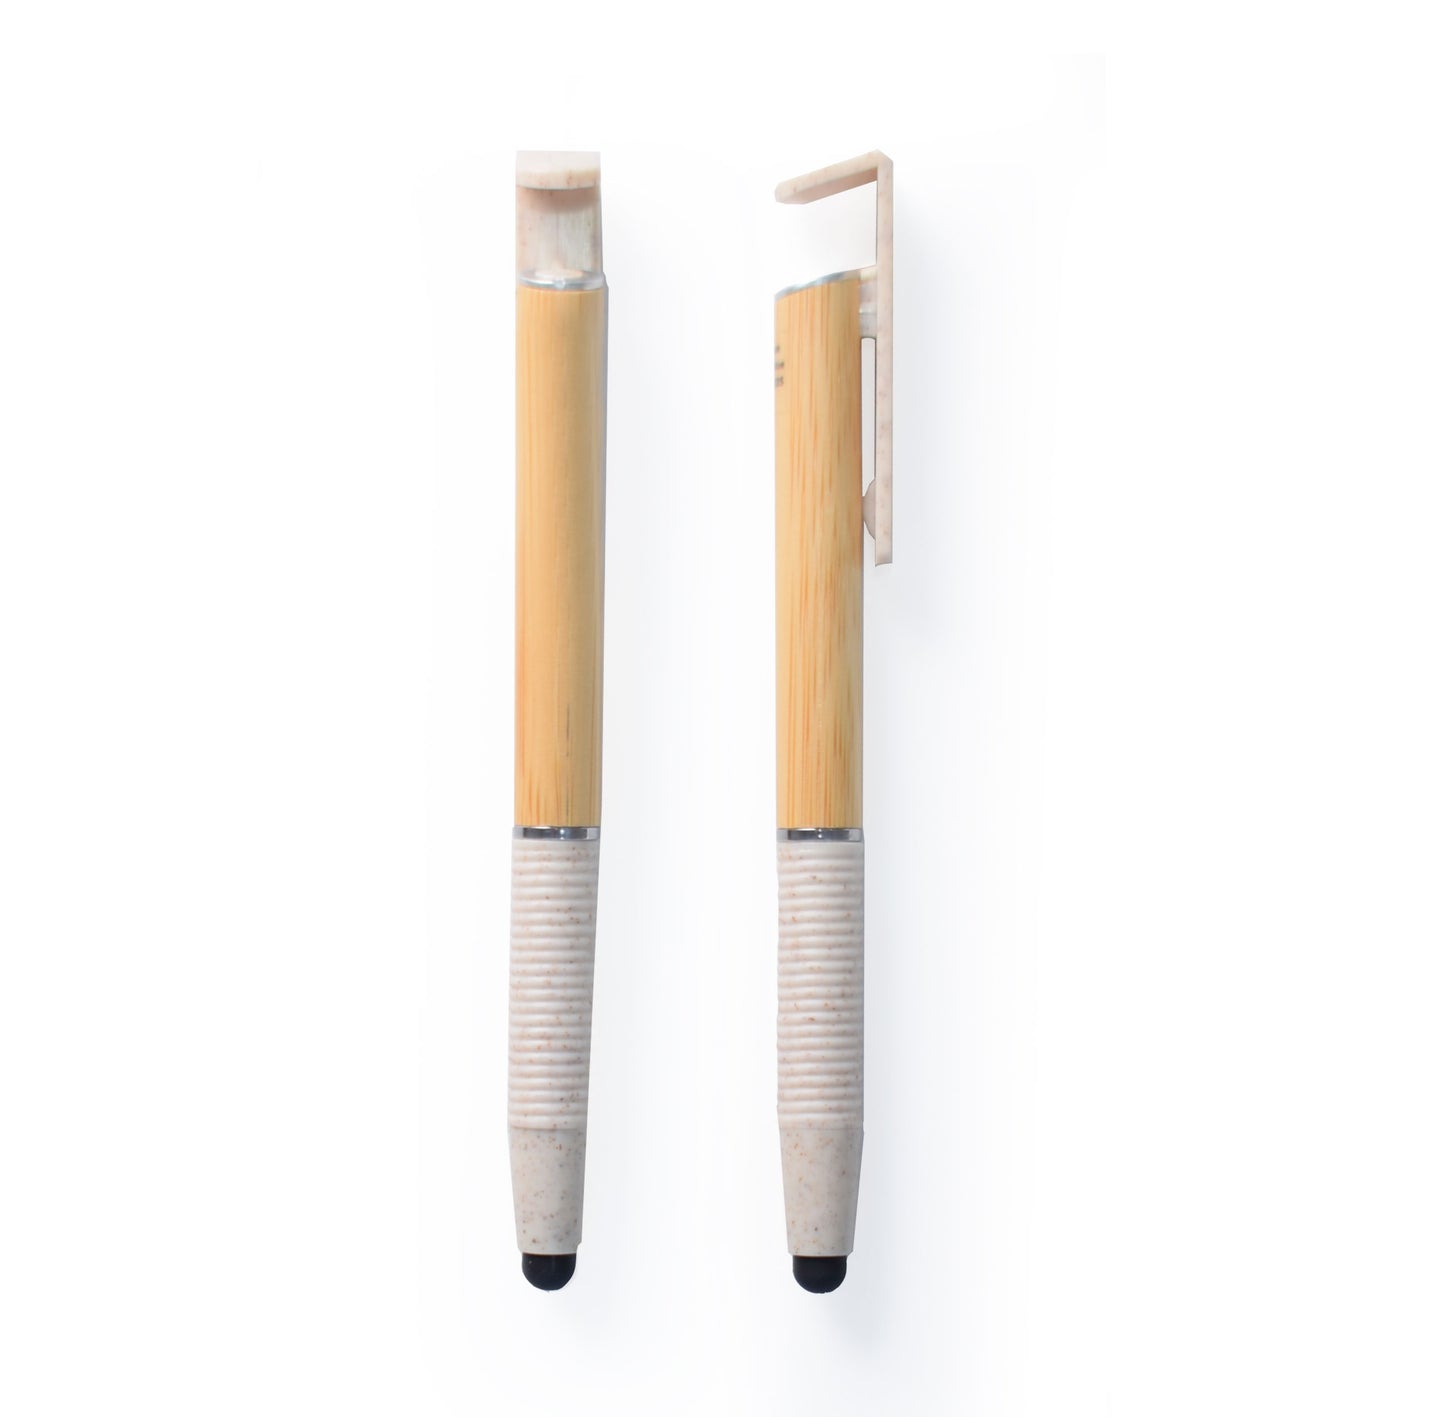 Cork Notebook + bamboo pen